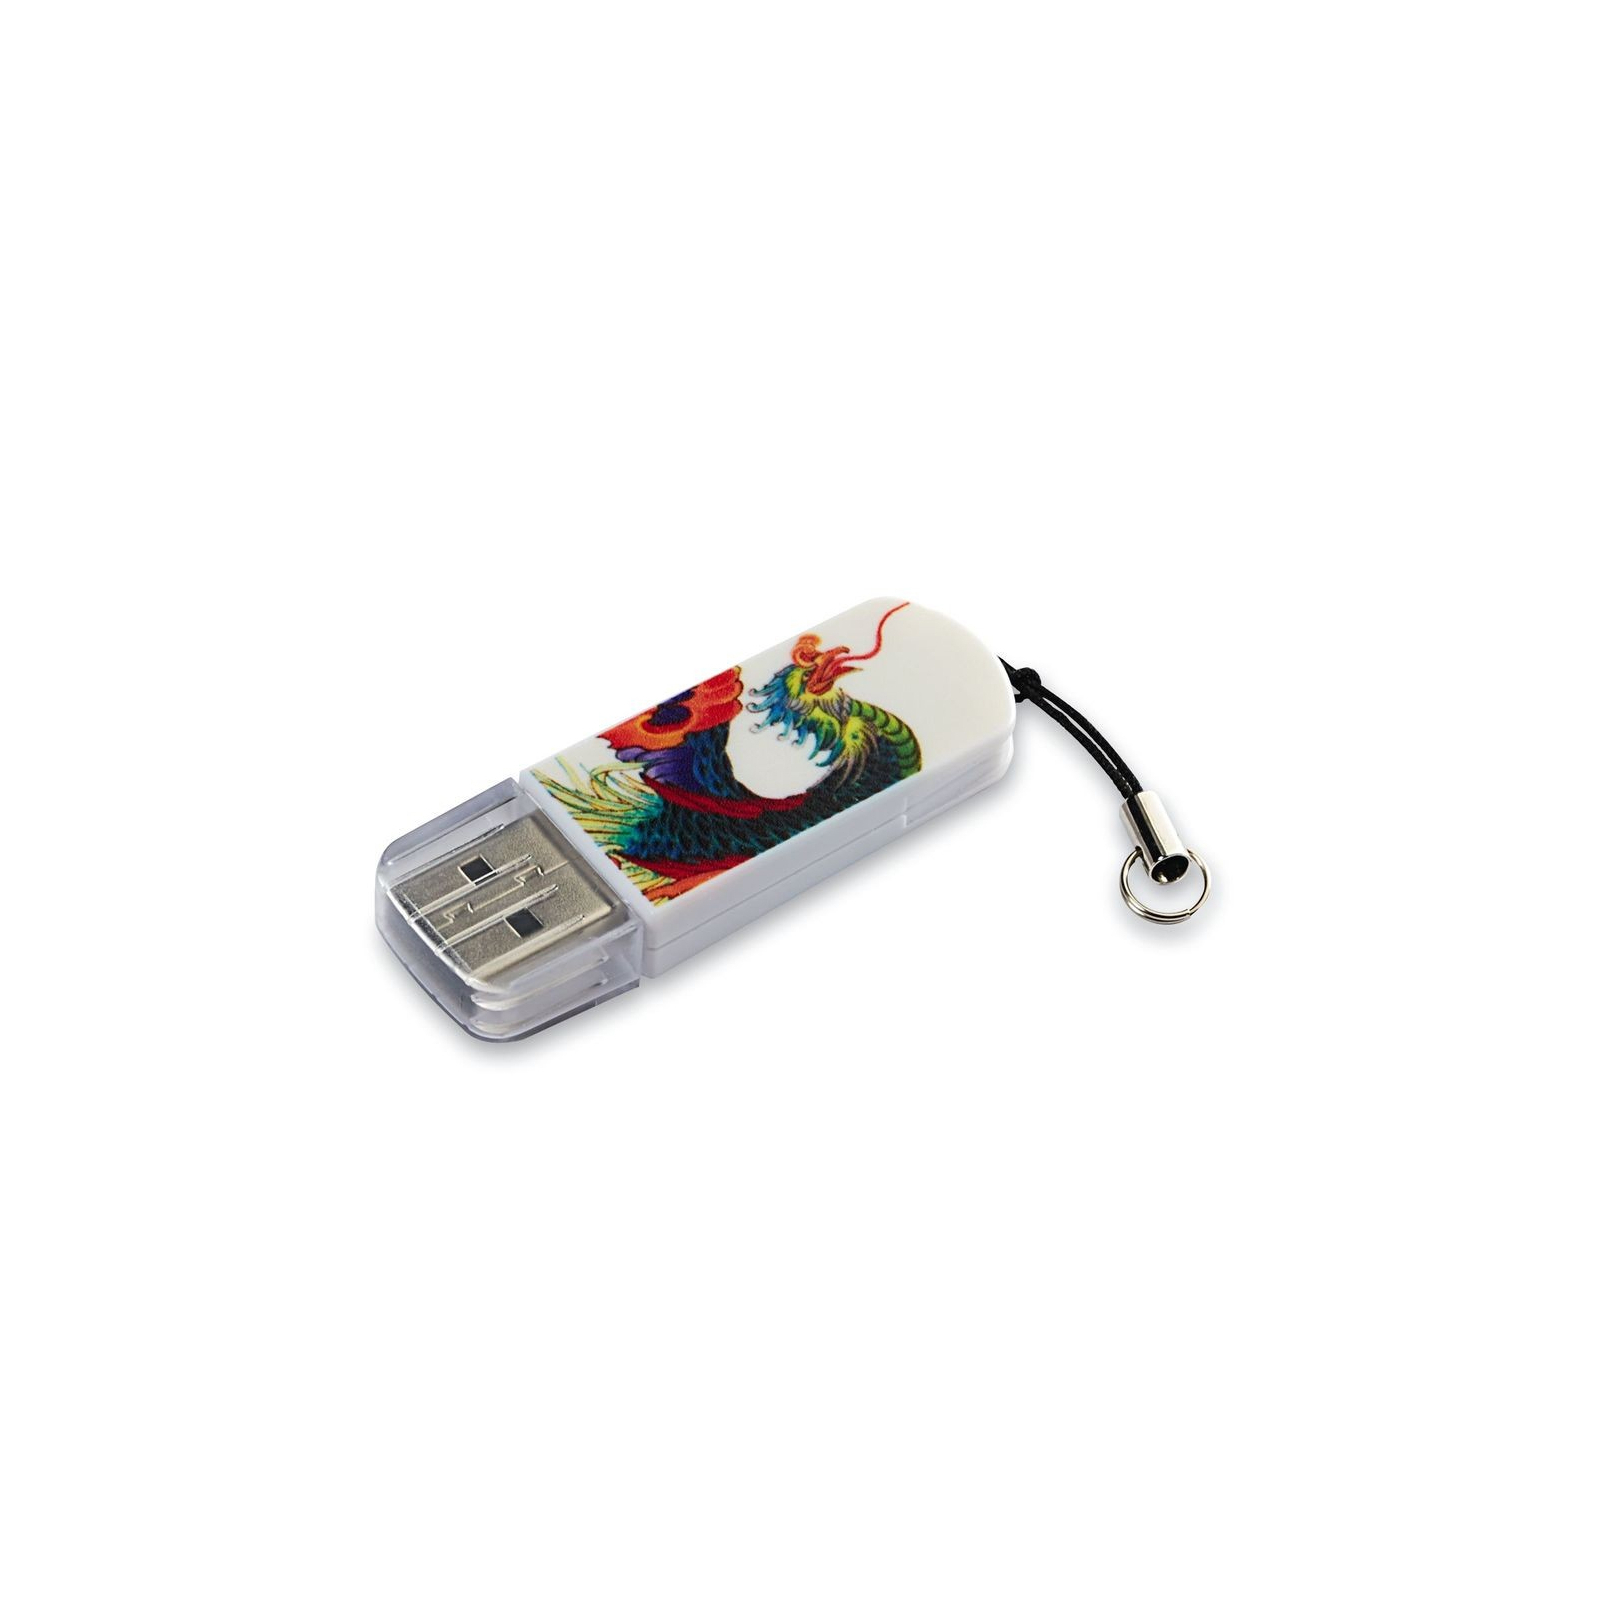 USB флеш накопитель Verbatim 16GB Store n Go Mini TATTOO EDITION PHOENIX USB 2.0 (49887)